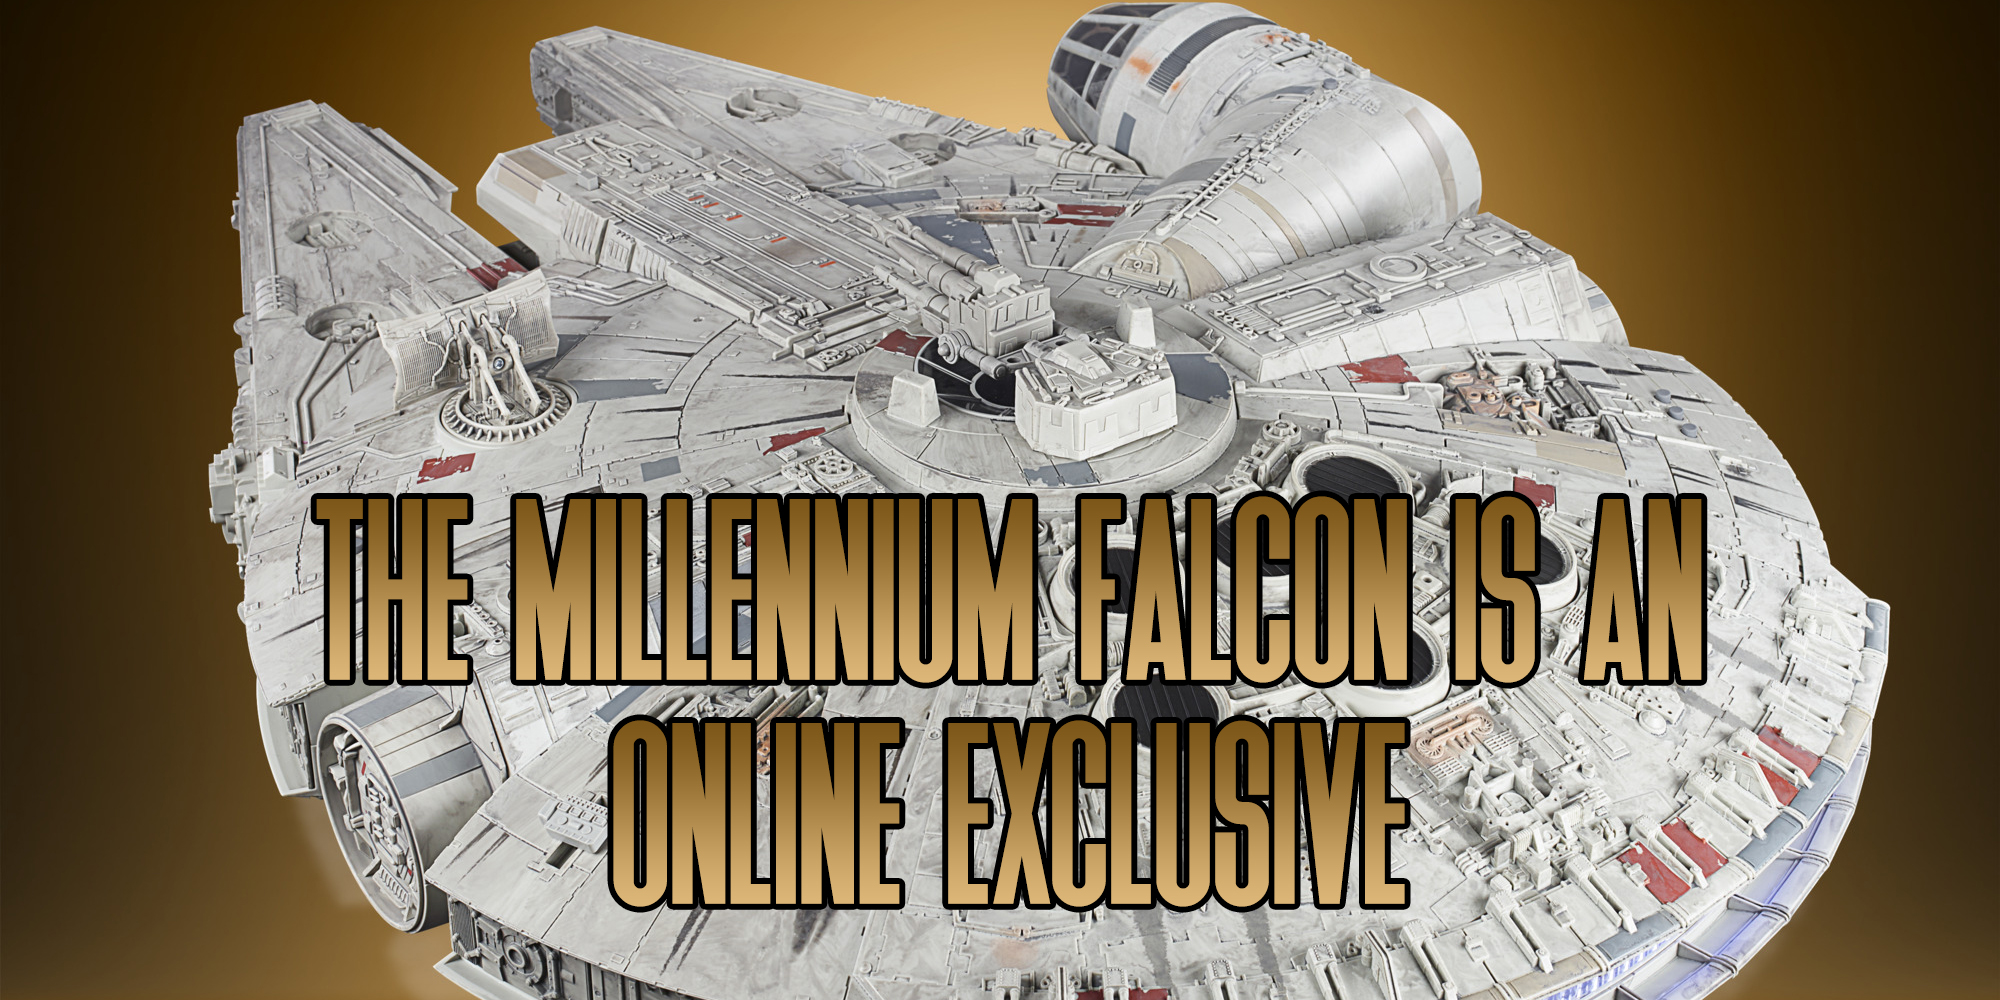 vintage collection millennium falcon